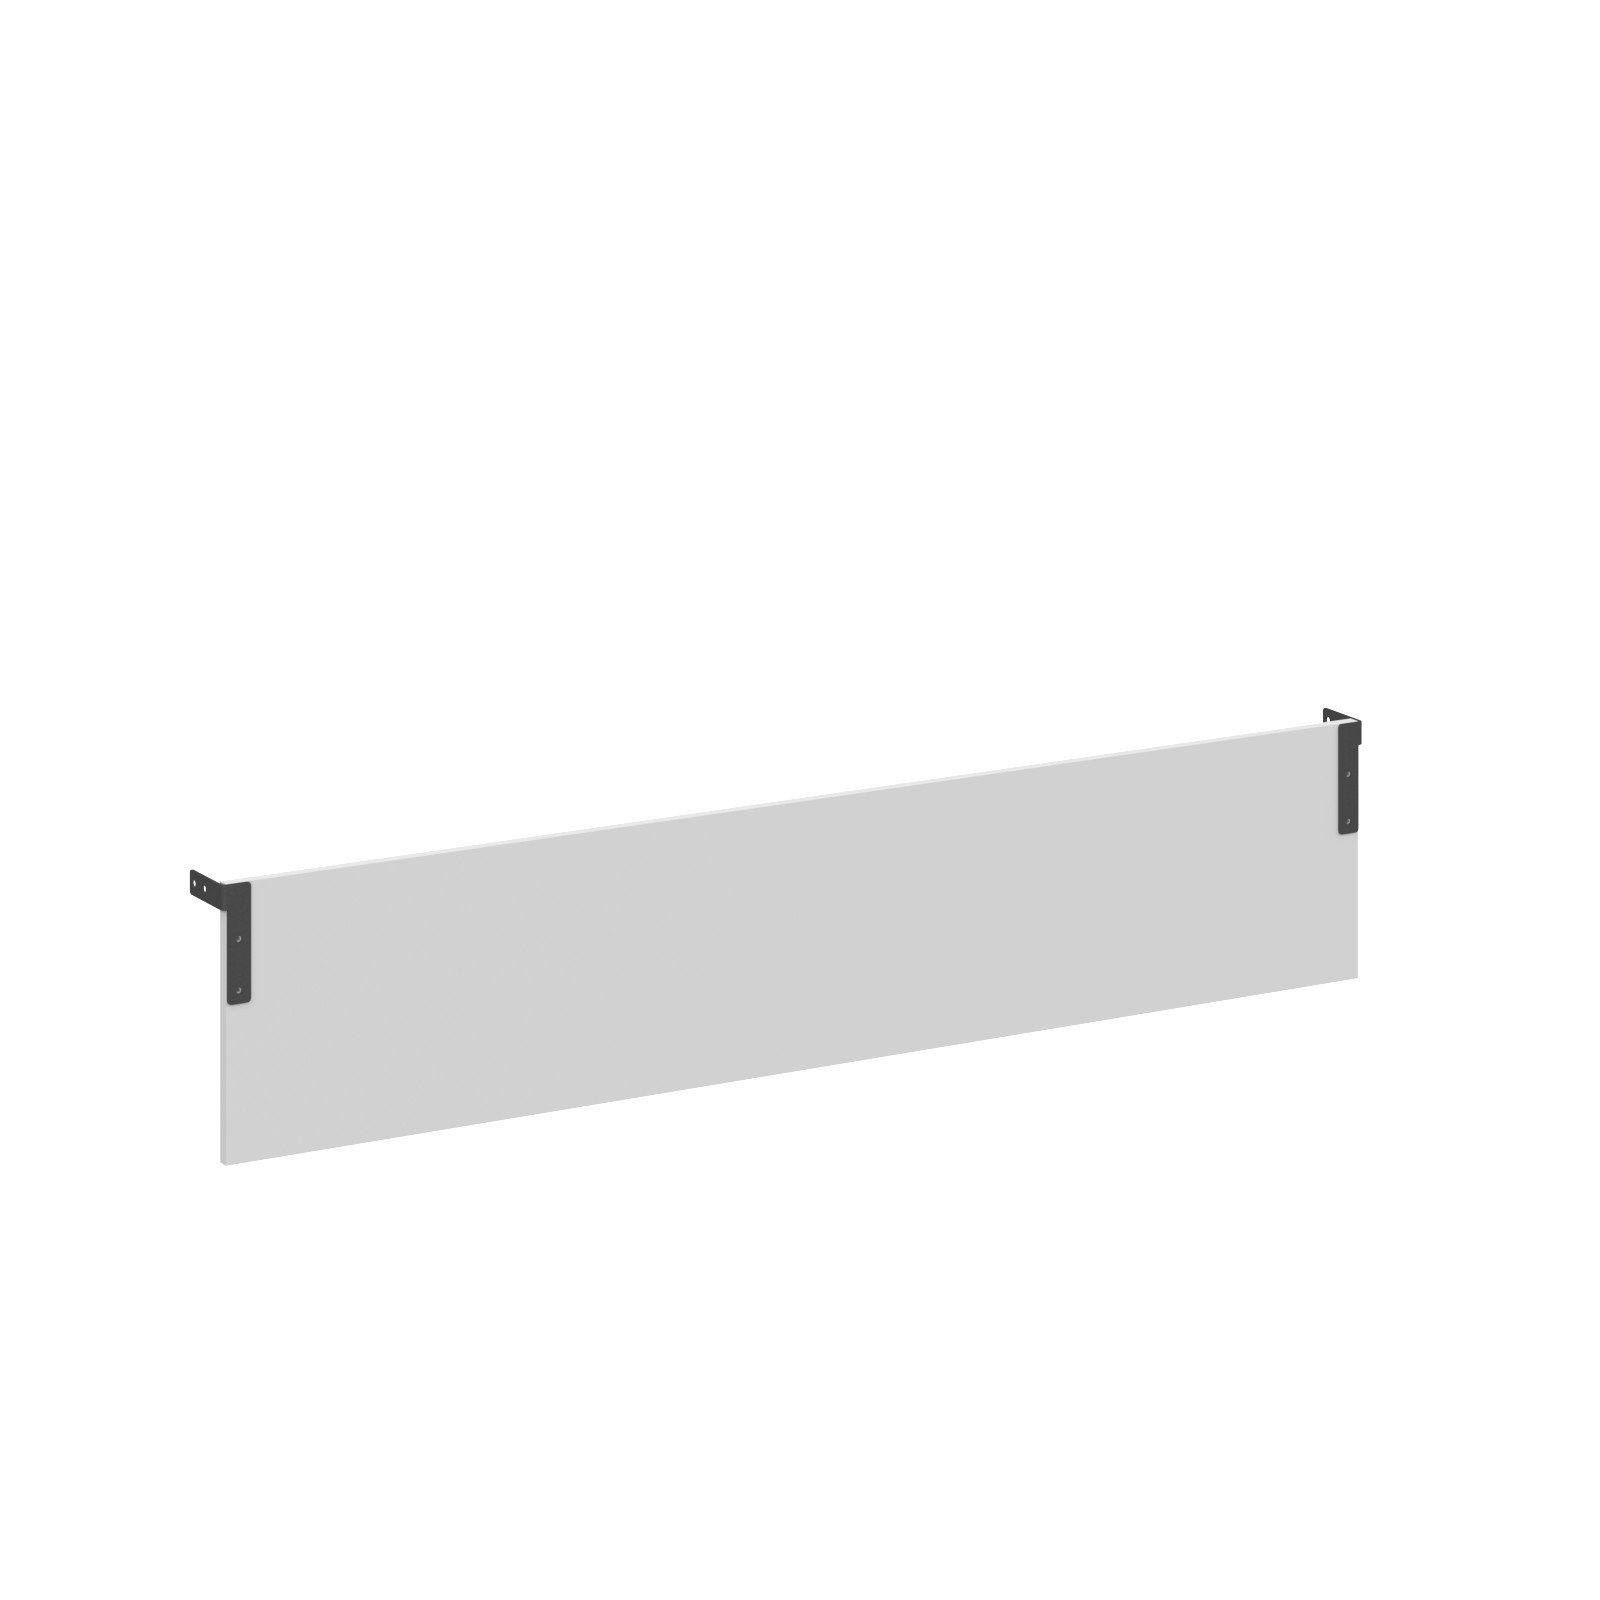 Фронтальные панели к одинарным столам (аксессуар) XDST 187